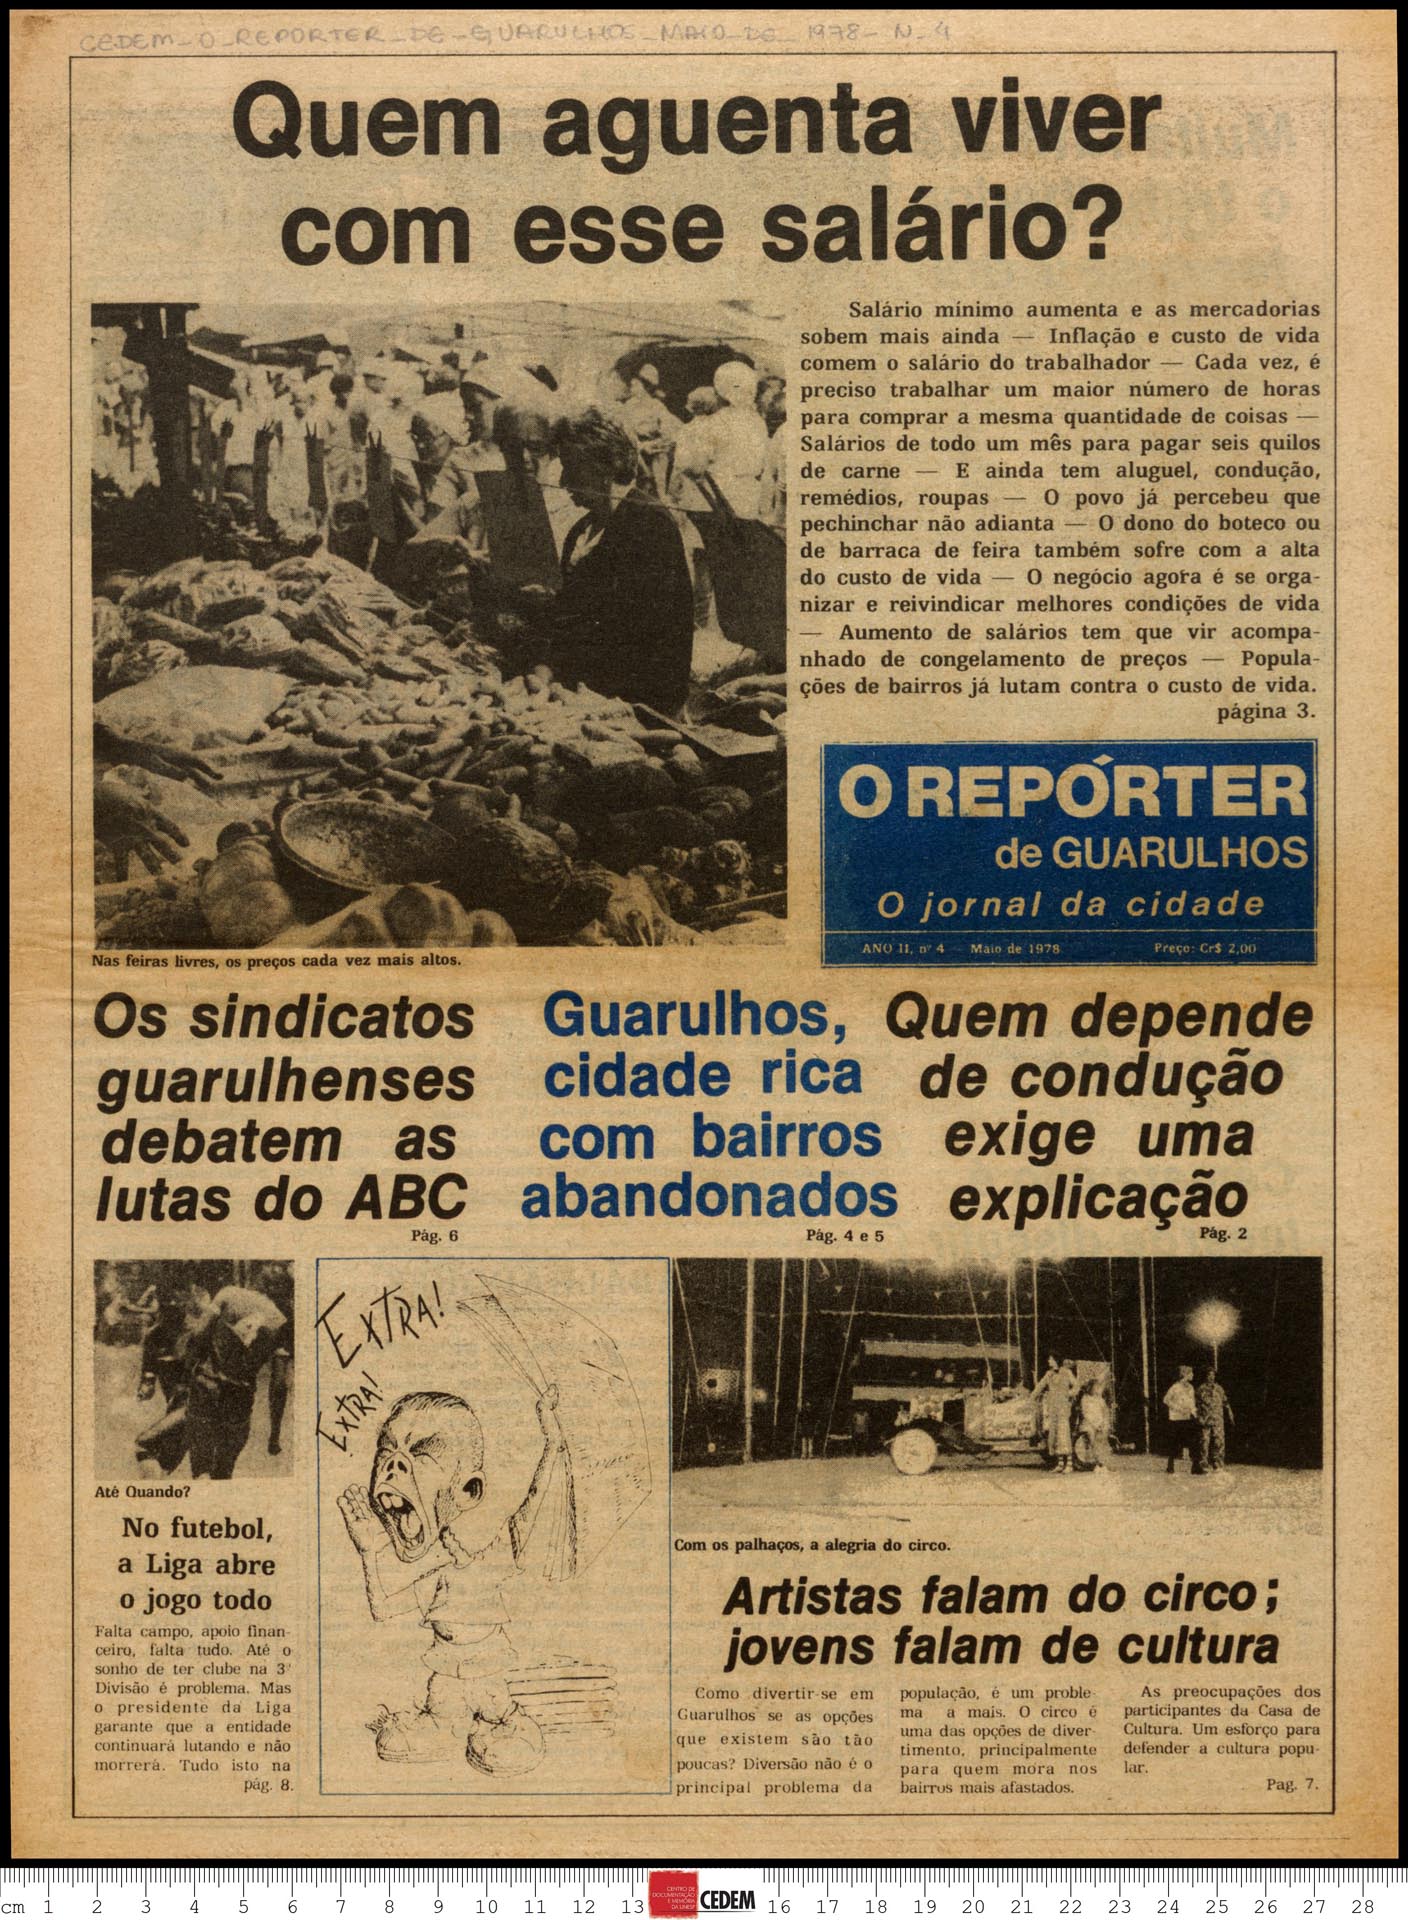 O reportér de Guarulhos - 4 - mai. 1978